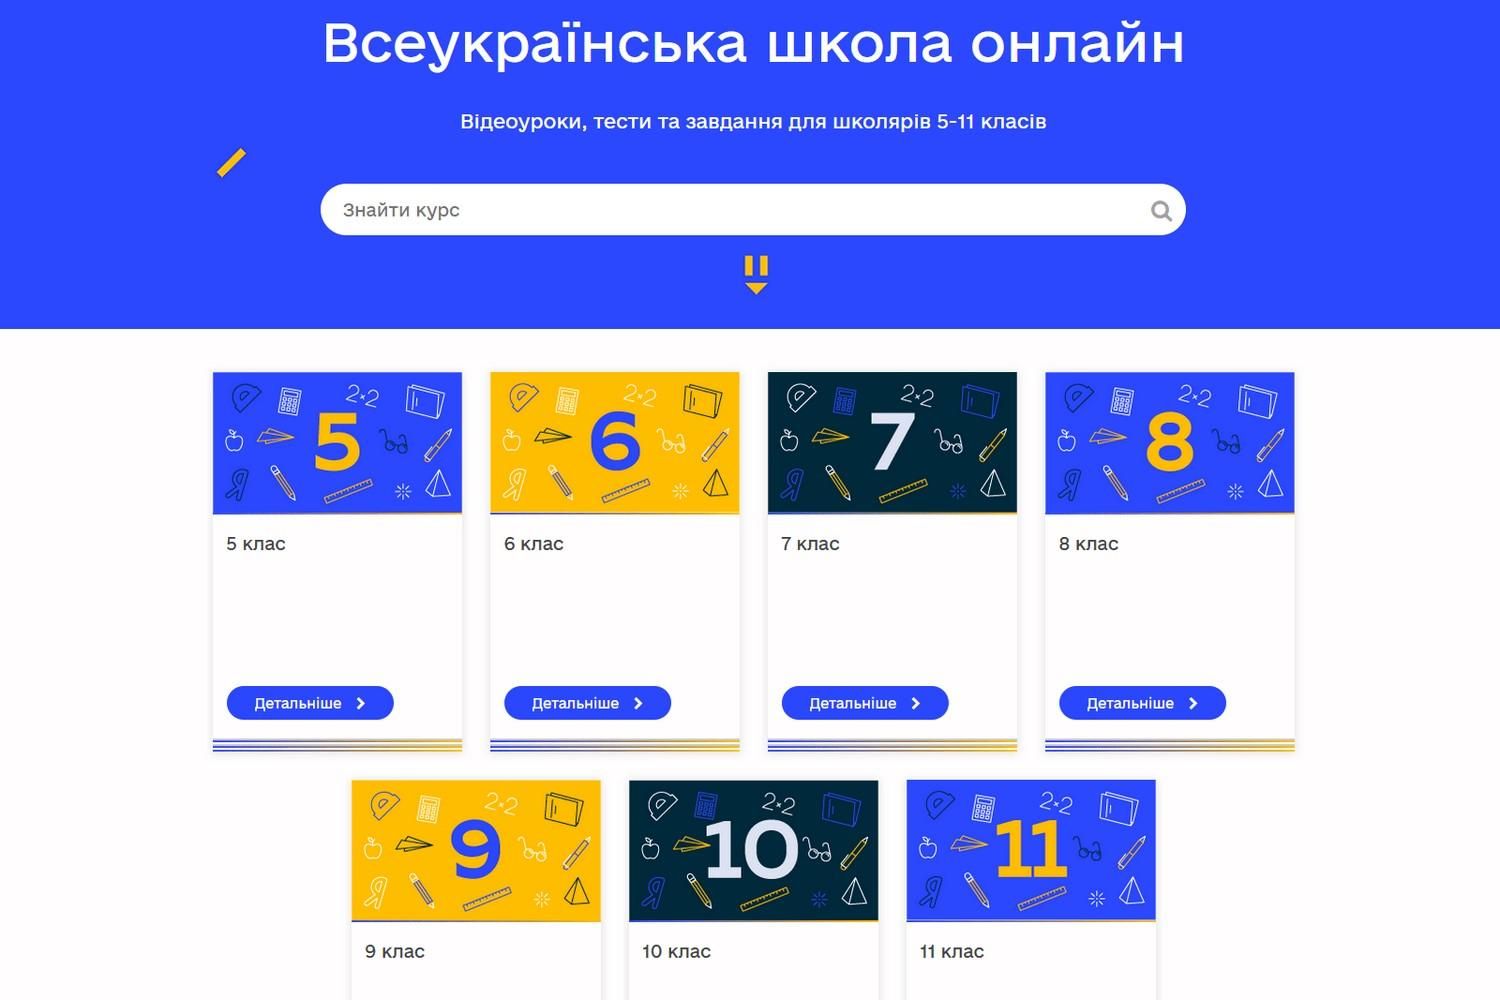 Всеукраїнська школа онлайн не є повноцінною платформою для навчання